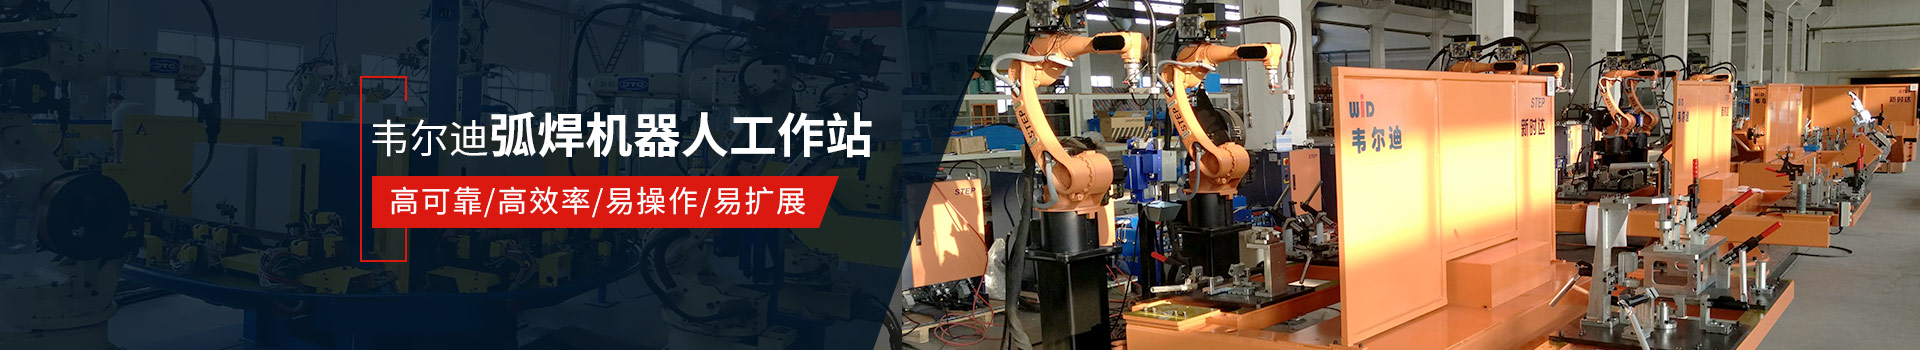 韦尔迪弧焊机器人工作站易操作、高效率